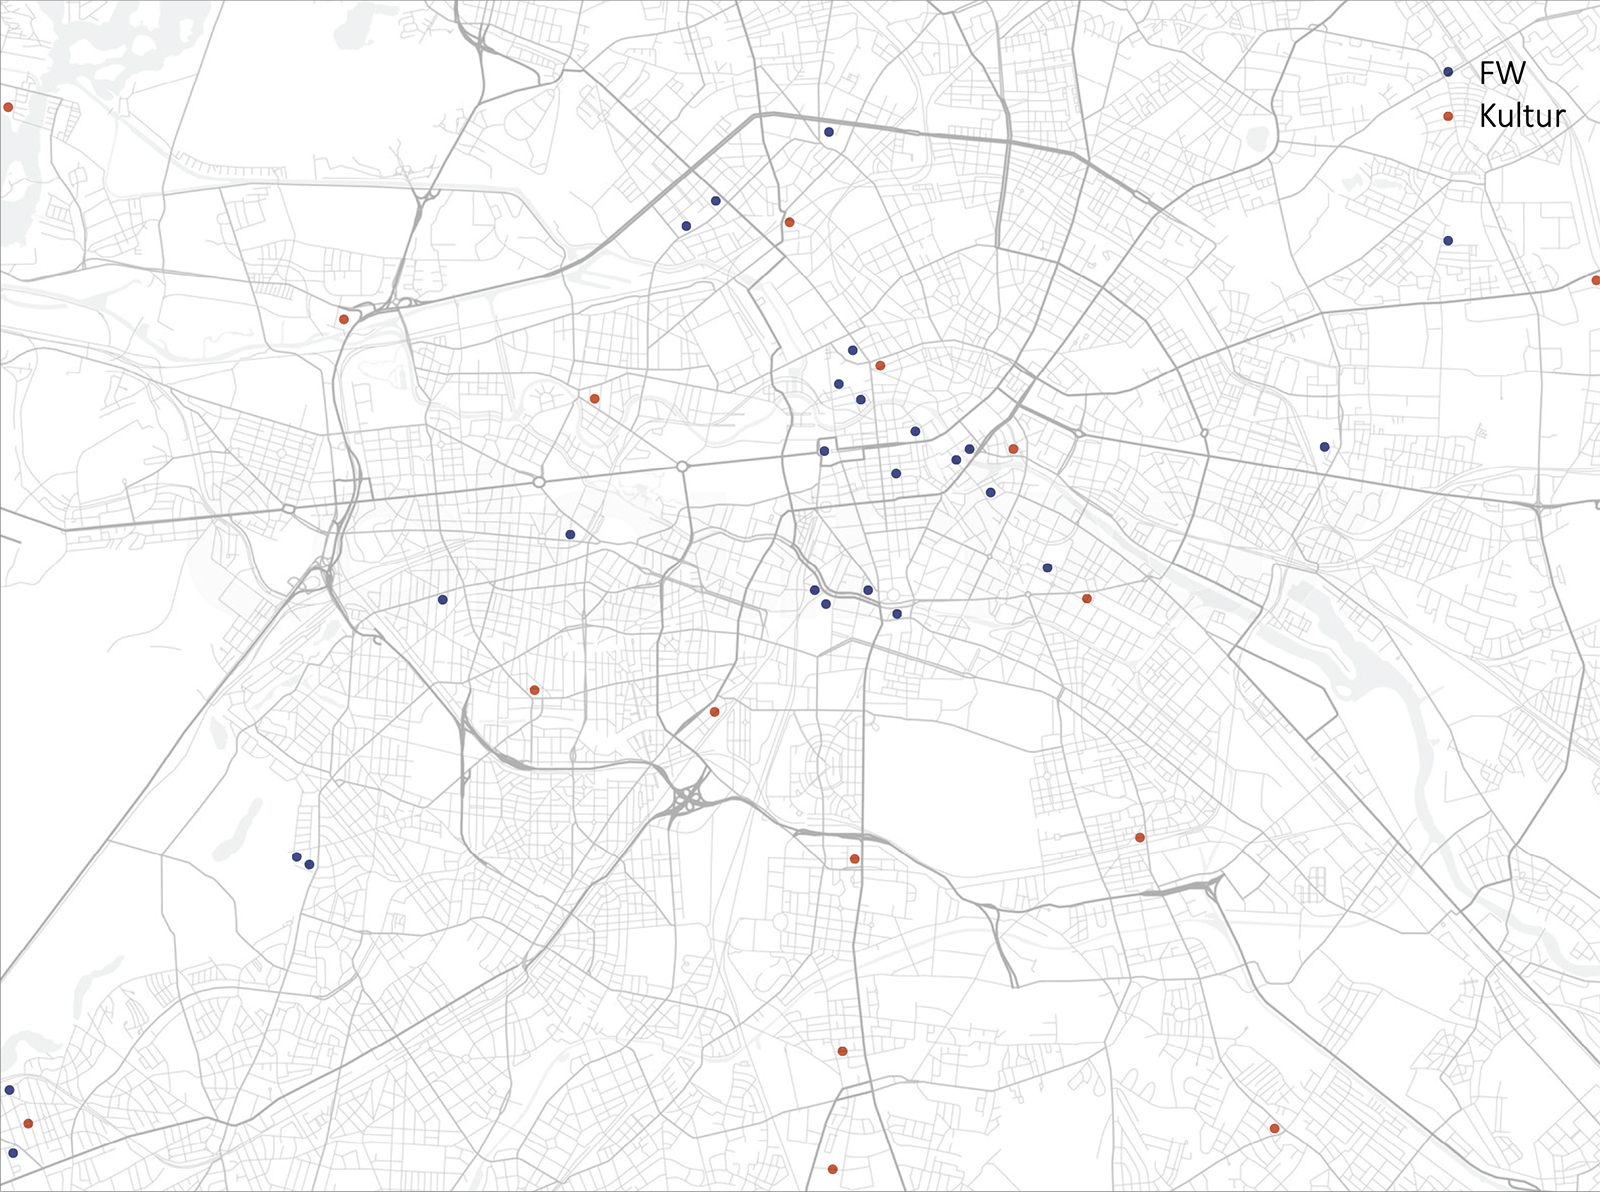 Bauen ohne Barriere: Karte Berlin mit untersuchten Geäuden